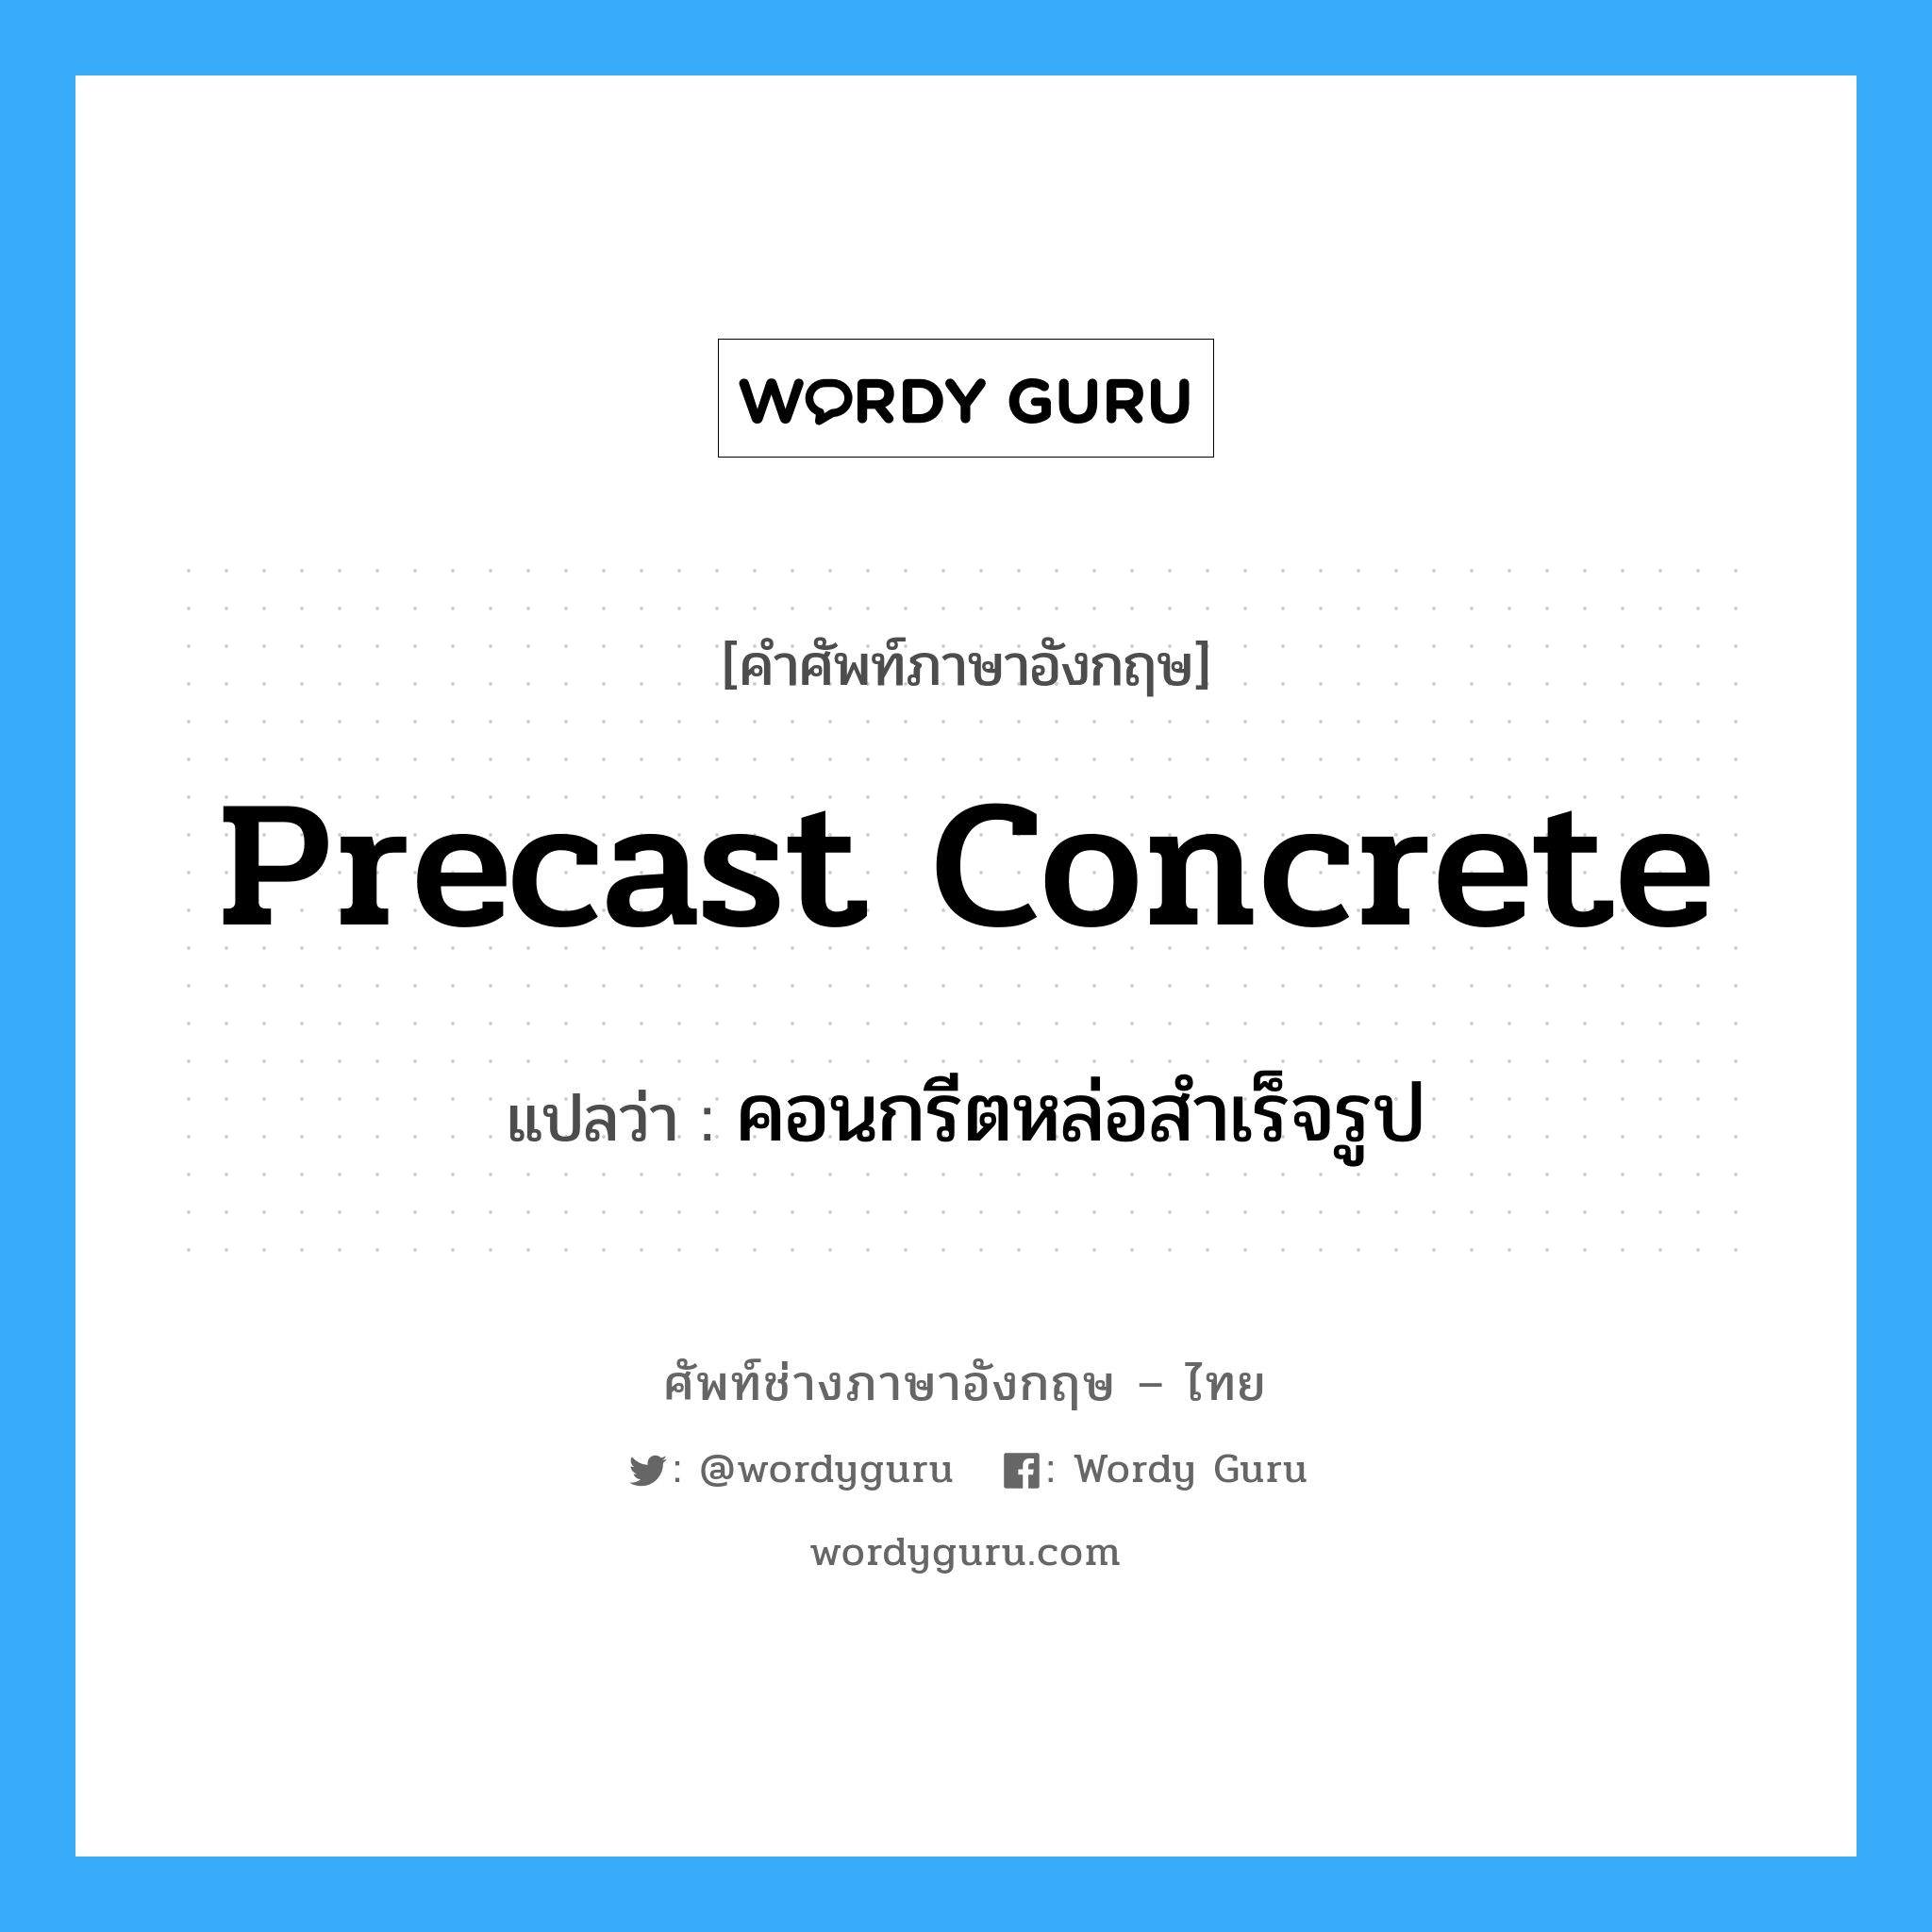 precast concrete แปลว่า?, คำศัพท์ช่างภาษาอังกฤษ - ไทย precast concrete คำศัพท์ภาษาอังกฤษ precast concrete แปลว่า คอนกรีตหล่อสำเร็จรูป